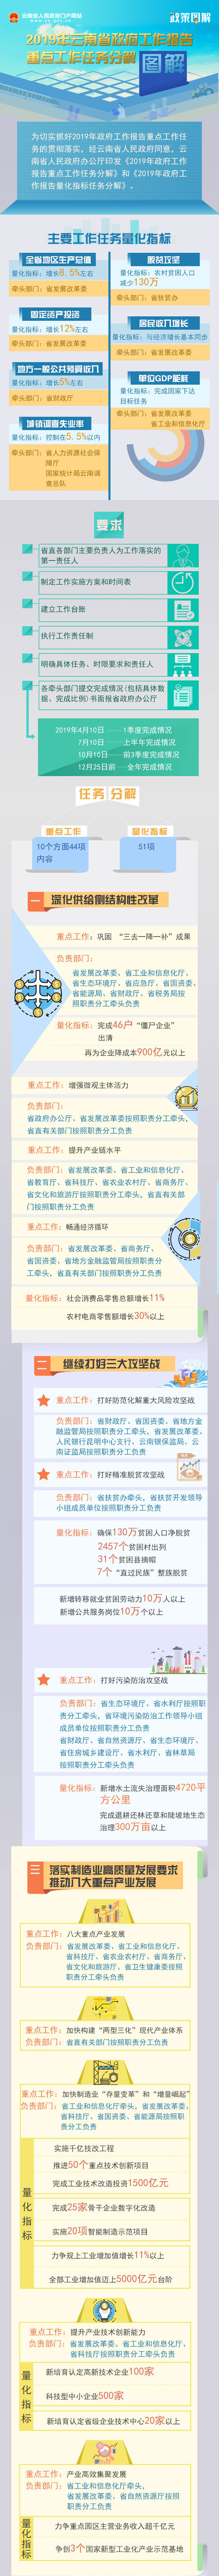 2019年云南省政府工作报告重点工作任务分解图解.jpg